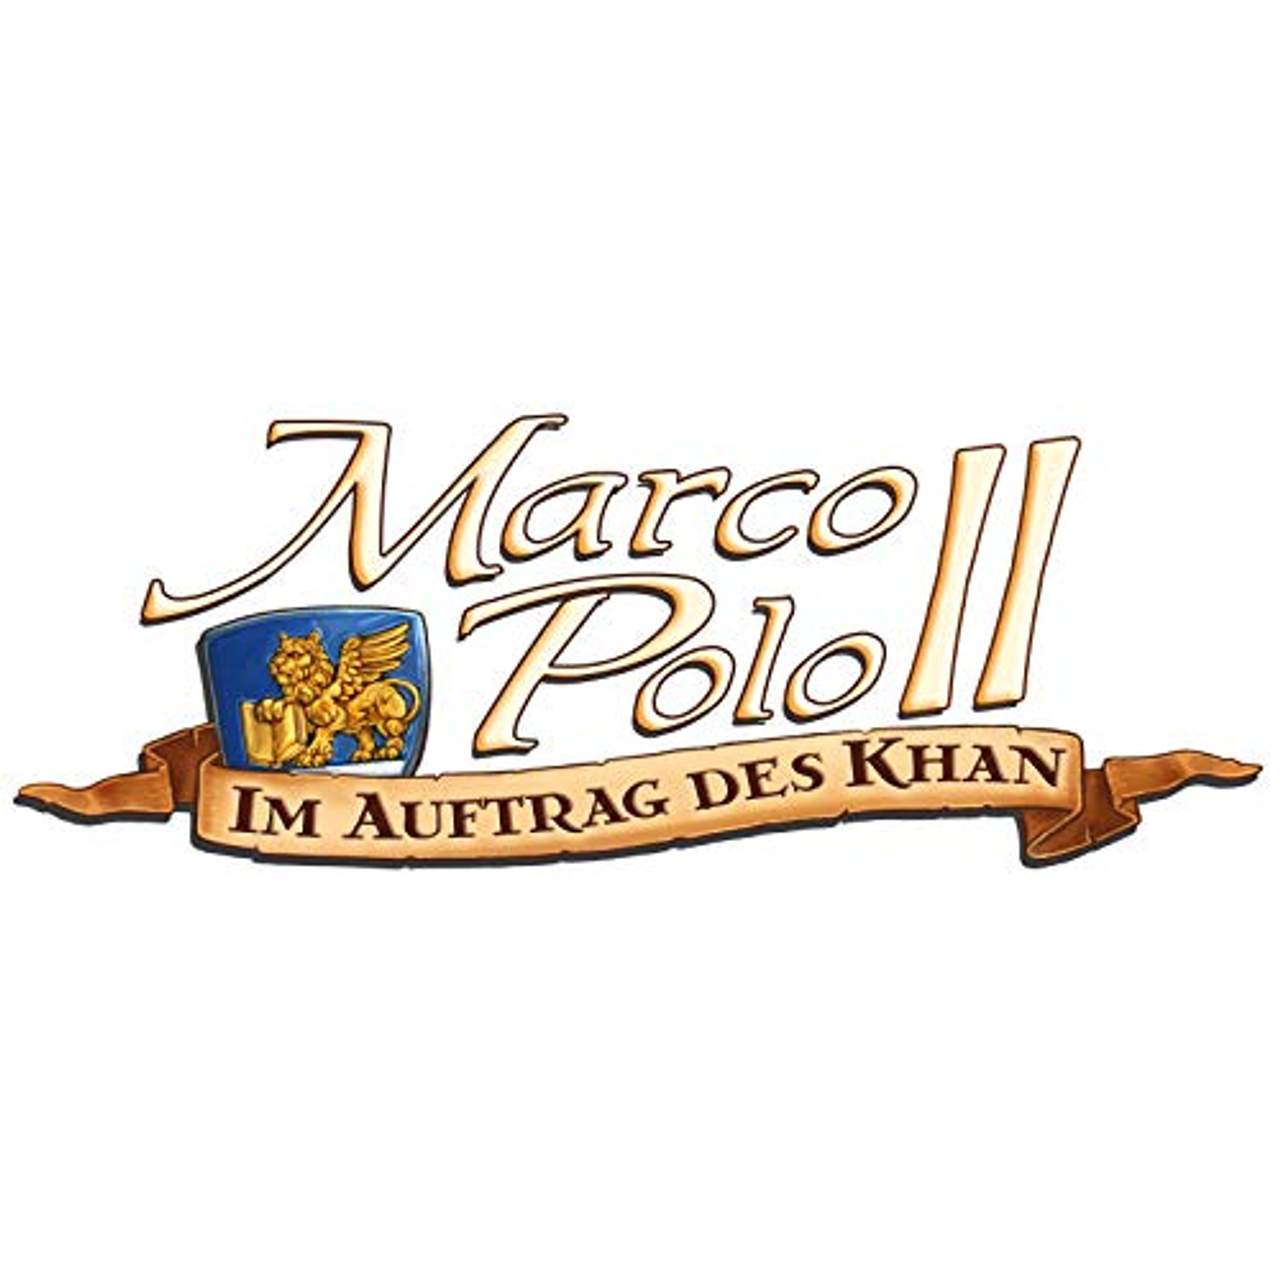 Marco Polo II: Im Auftrag des Khan